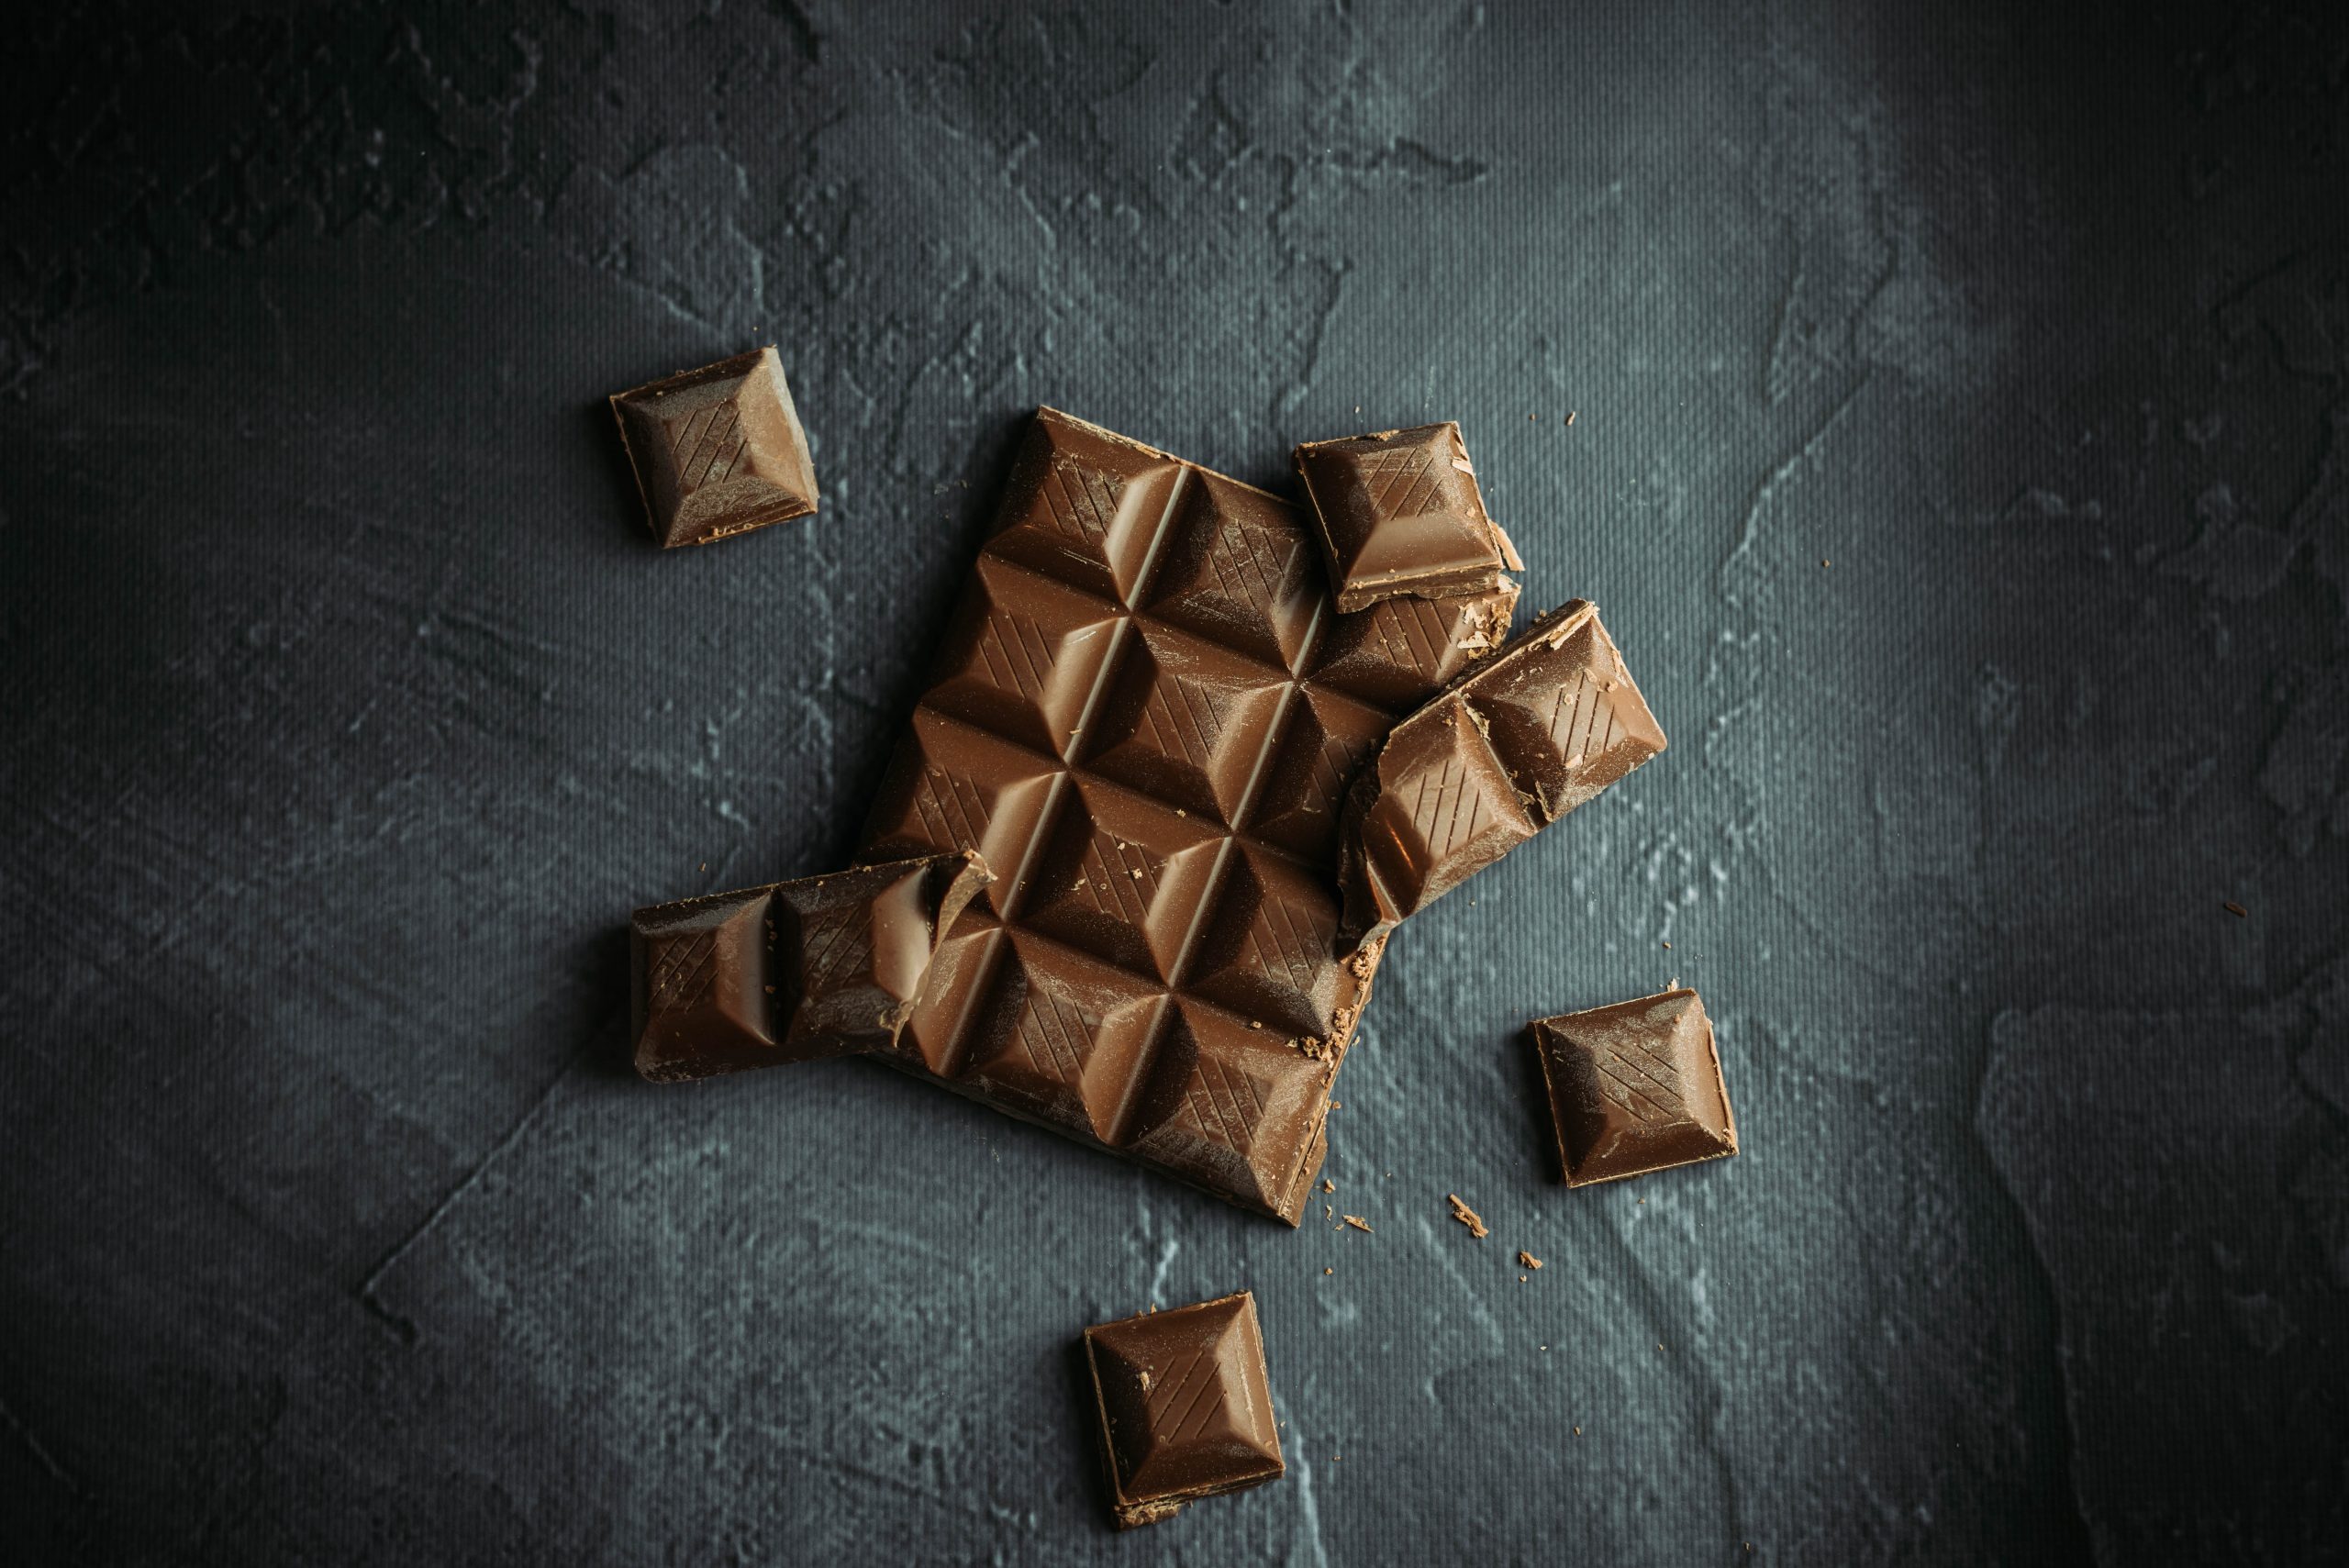  Шоколад зүүдлэх нь таны амьдралд ямар нэгэн чухал зүйлийг ИЛЧЛЭХ болно